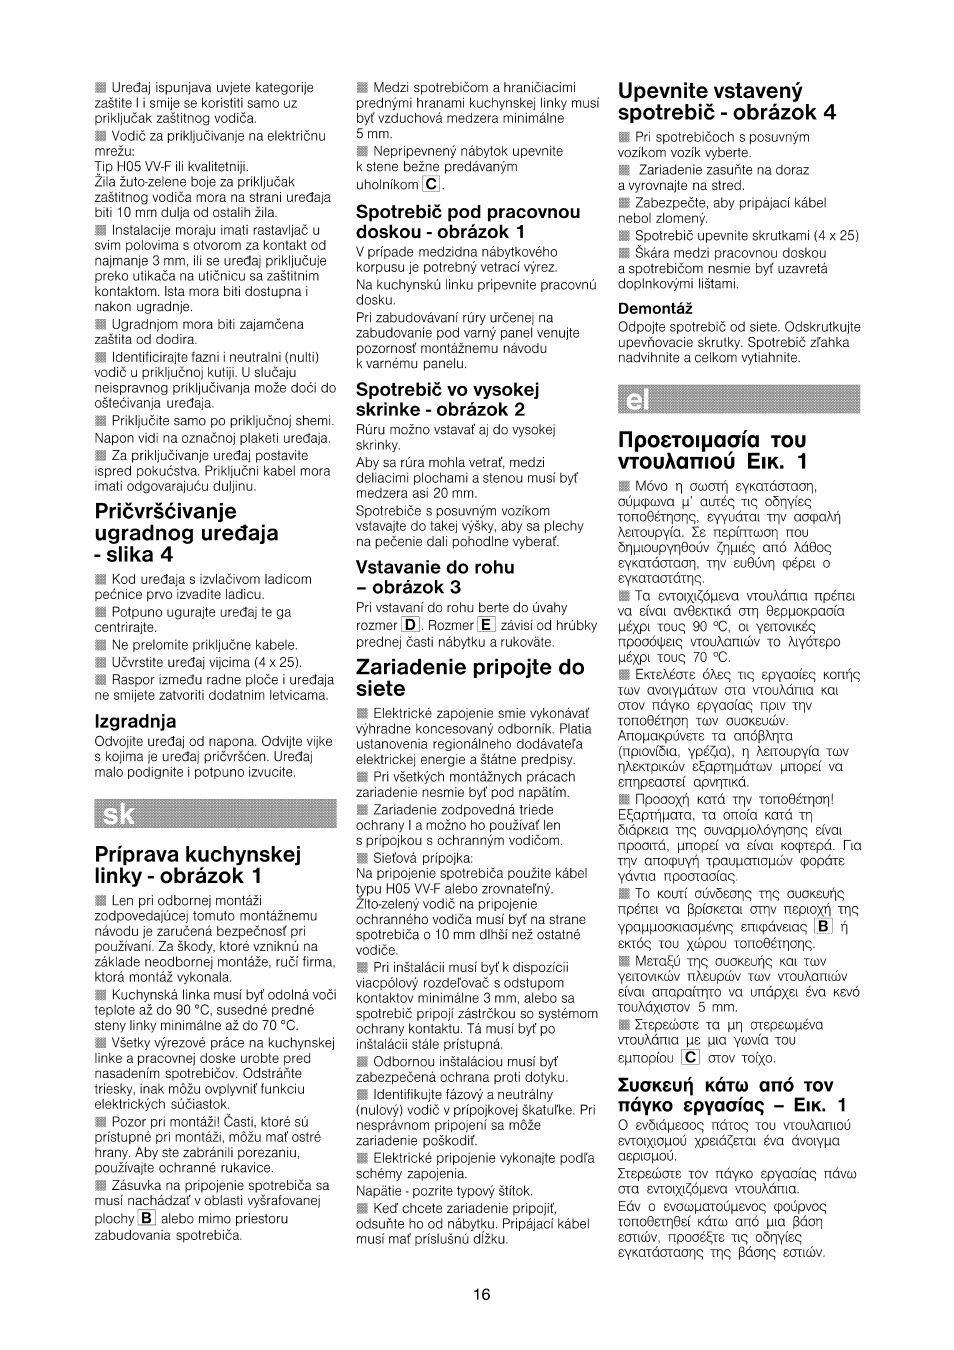 Izgradnja, Spotrebic pod pracovnou doskou - obrázok 1, Spotrebic vo vysokej  skrinke - obrázok 2 | Bosch HBN532E0 - inox Four intégrable User Manual |  Page 16 / 24 | Original mode